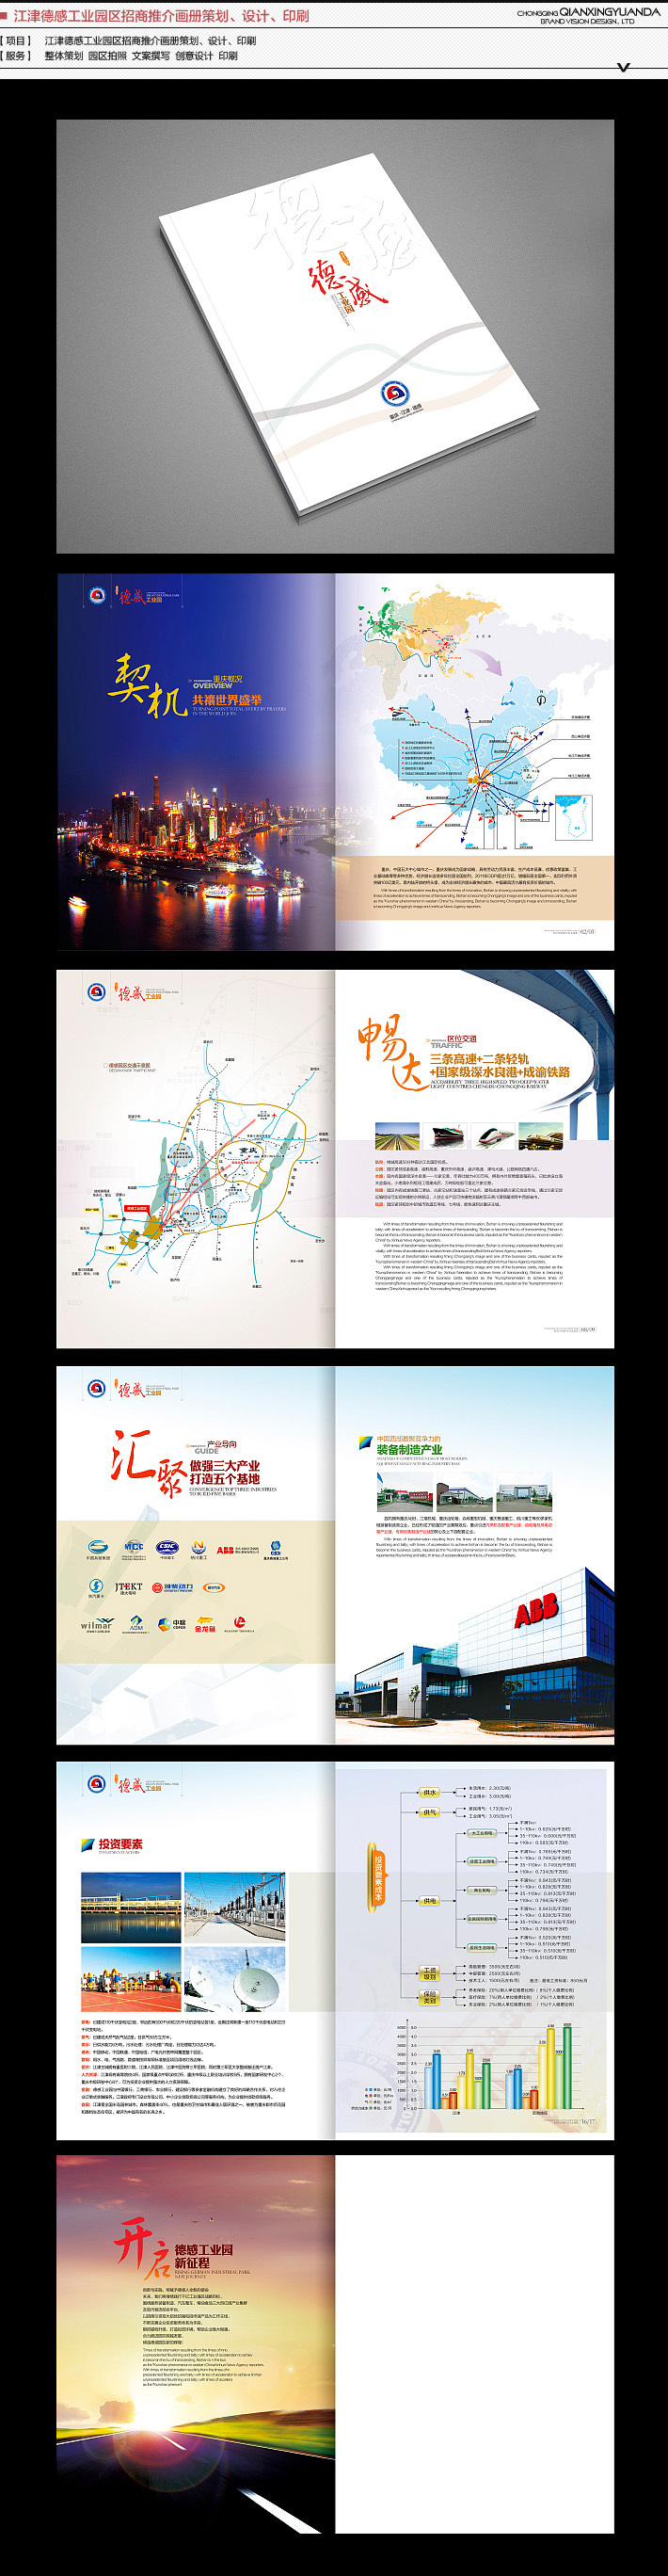 重庆政府画册设计